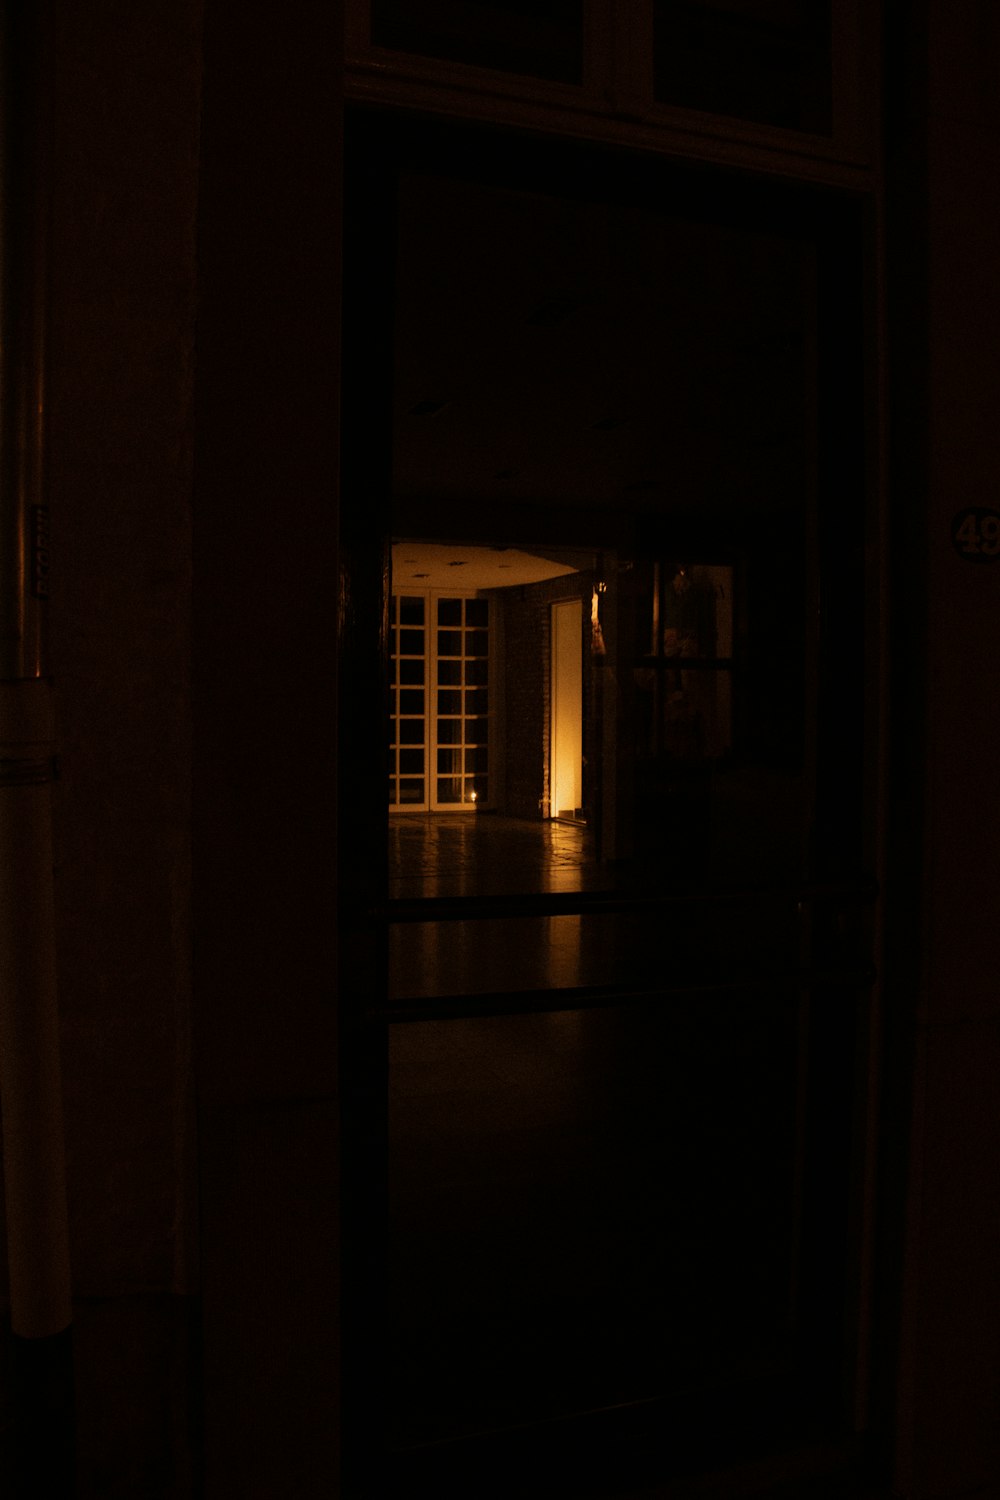 an open door in a dark room at night